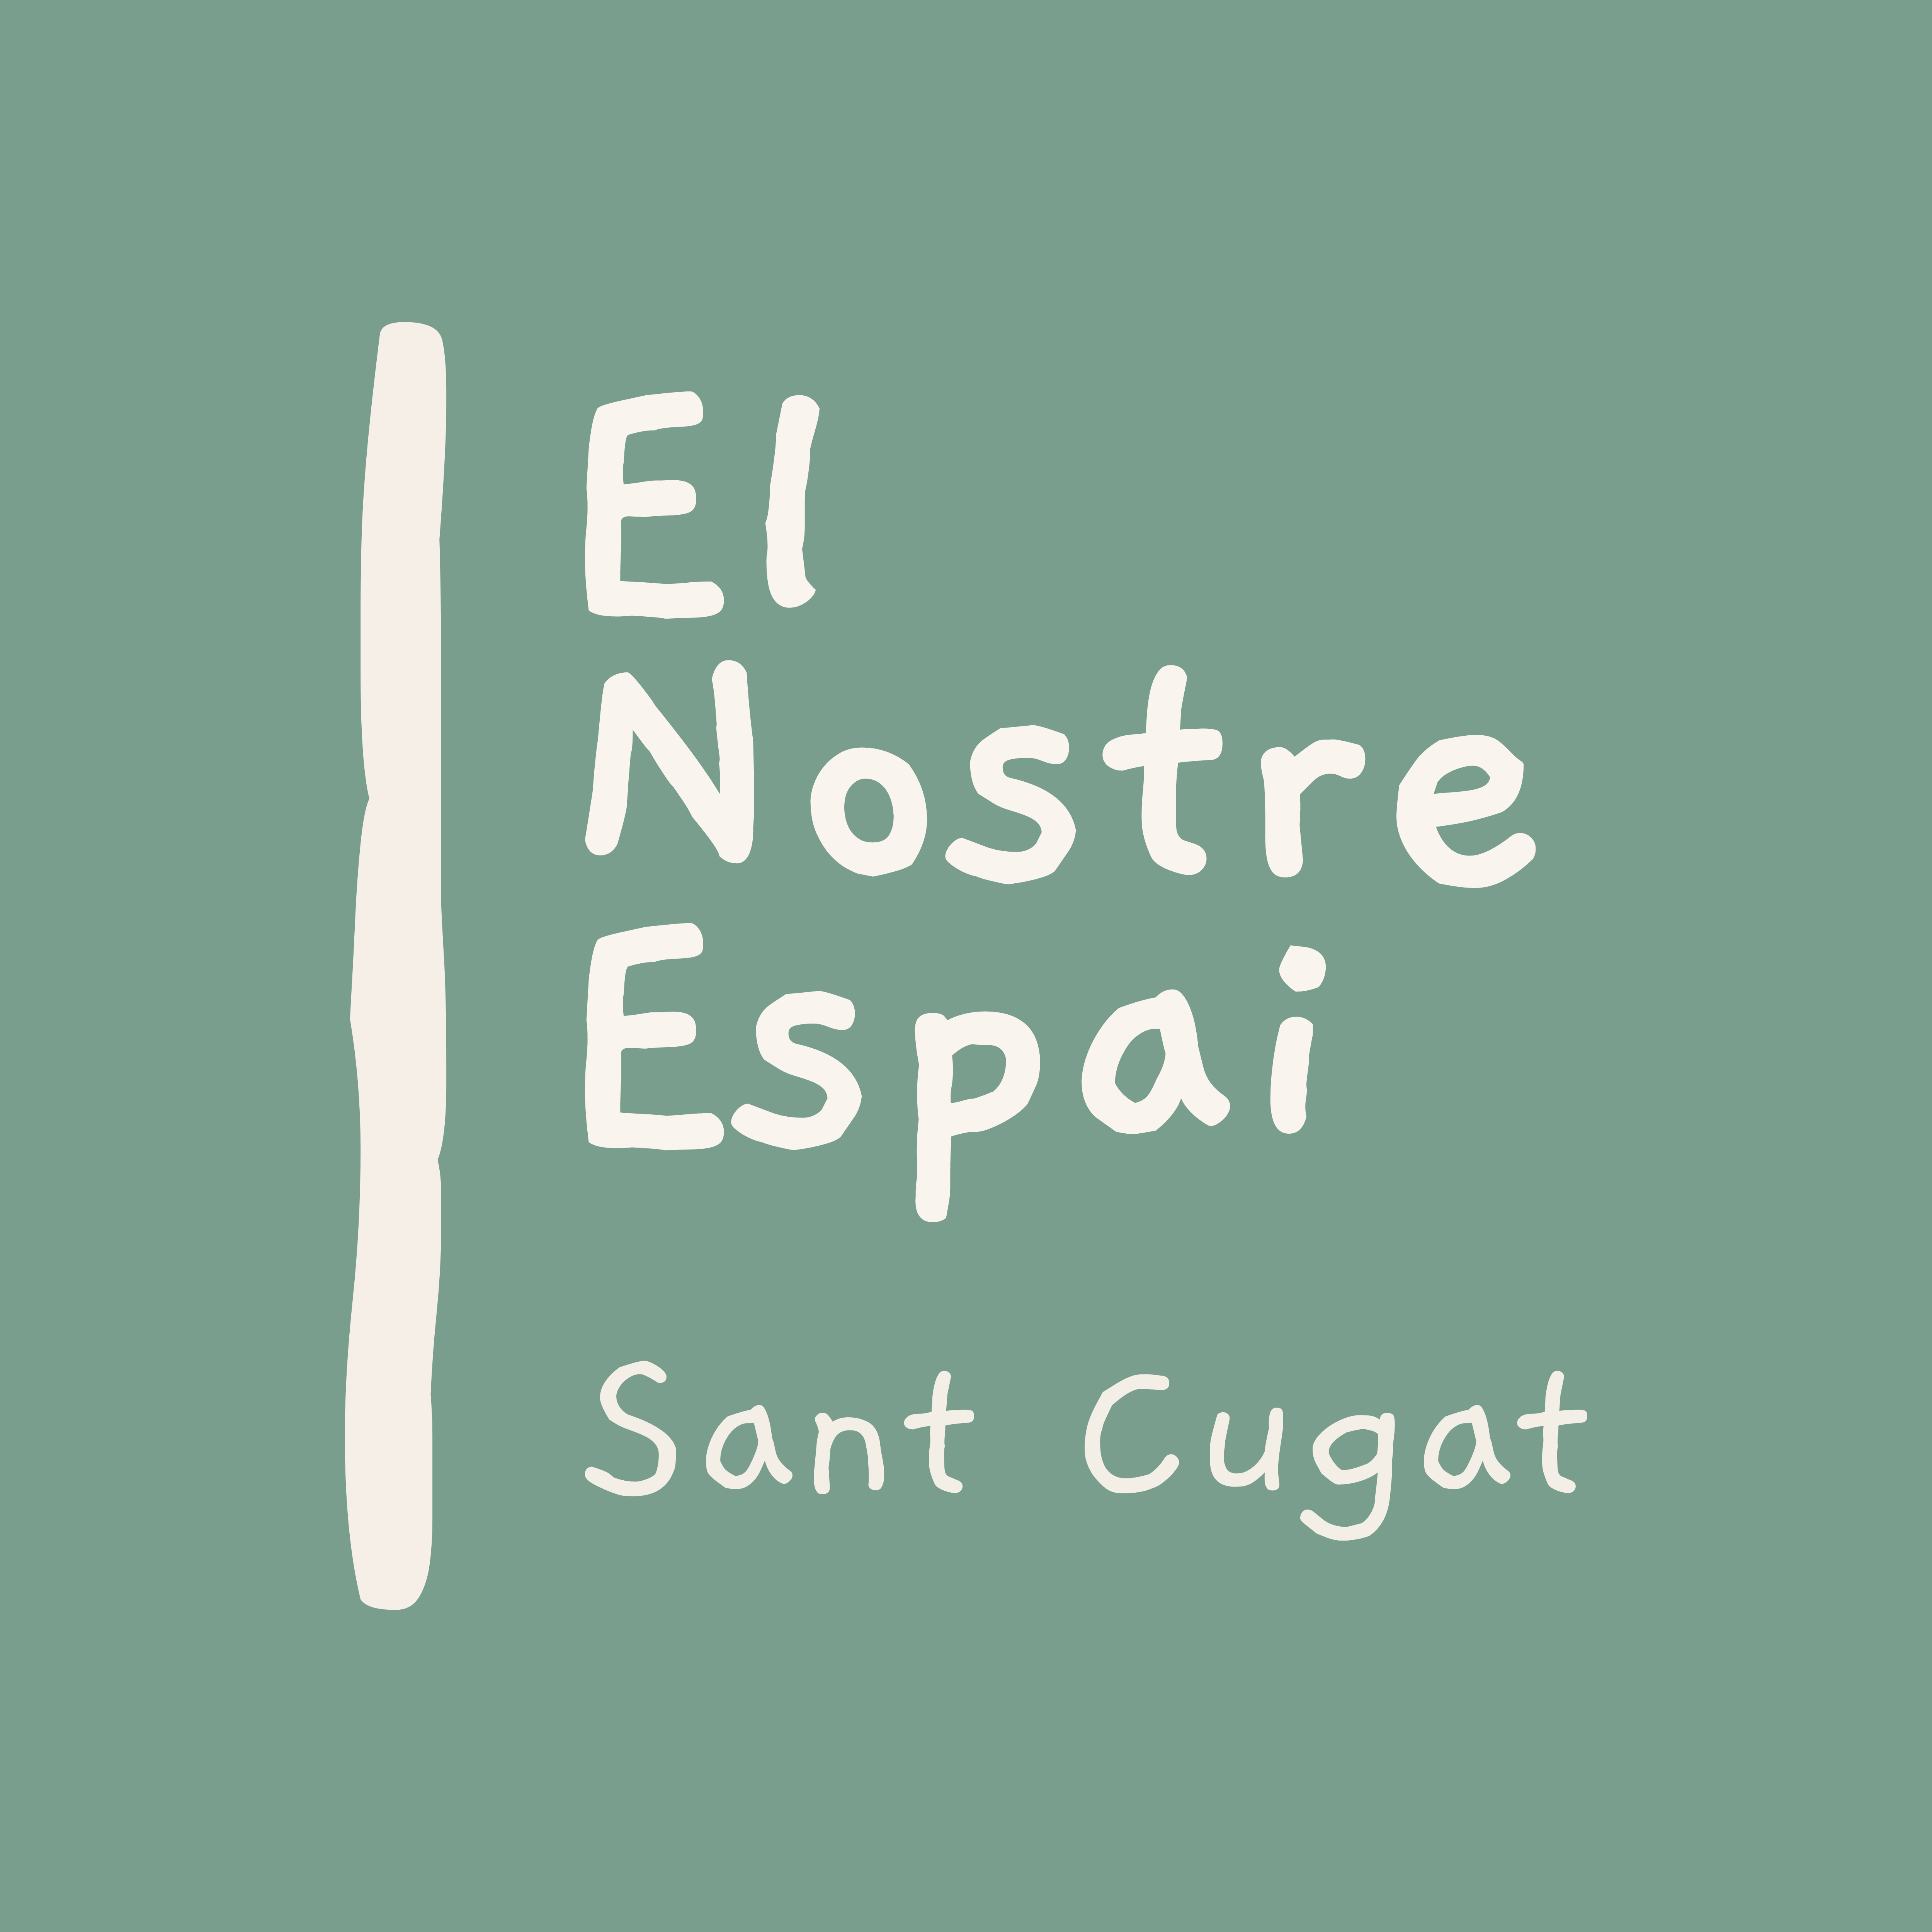 El nostre espai Sant Cugat Logo. FOTO: Cedida